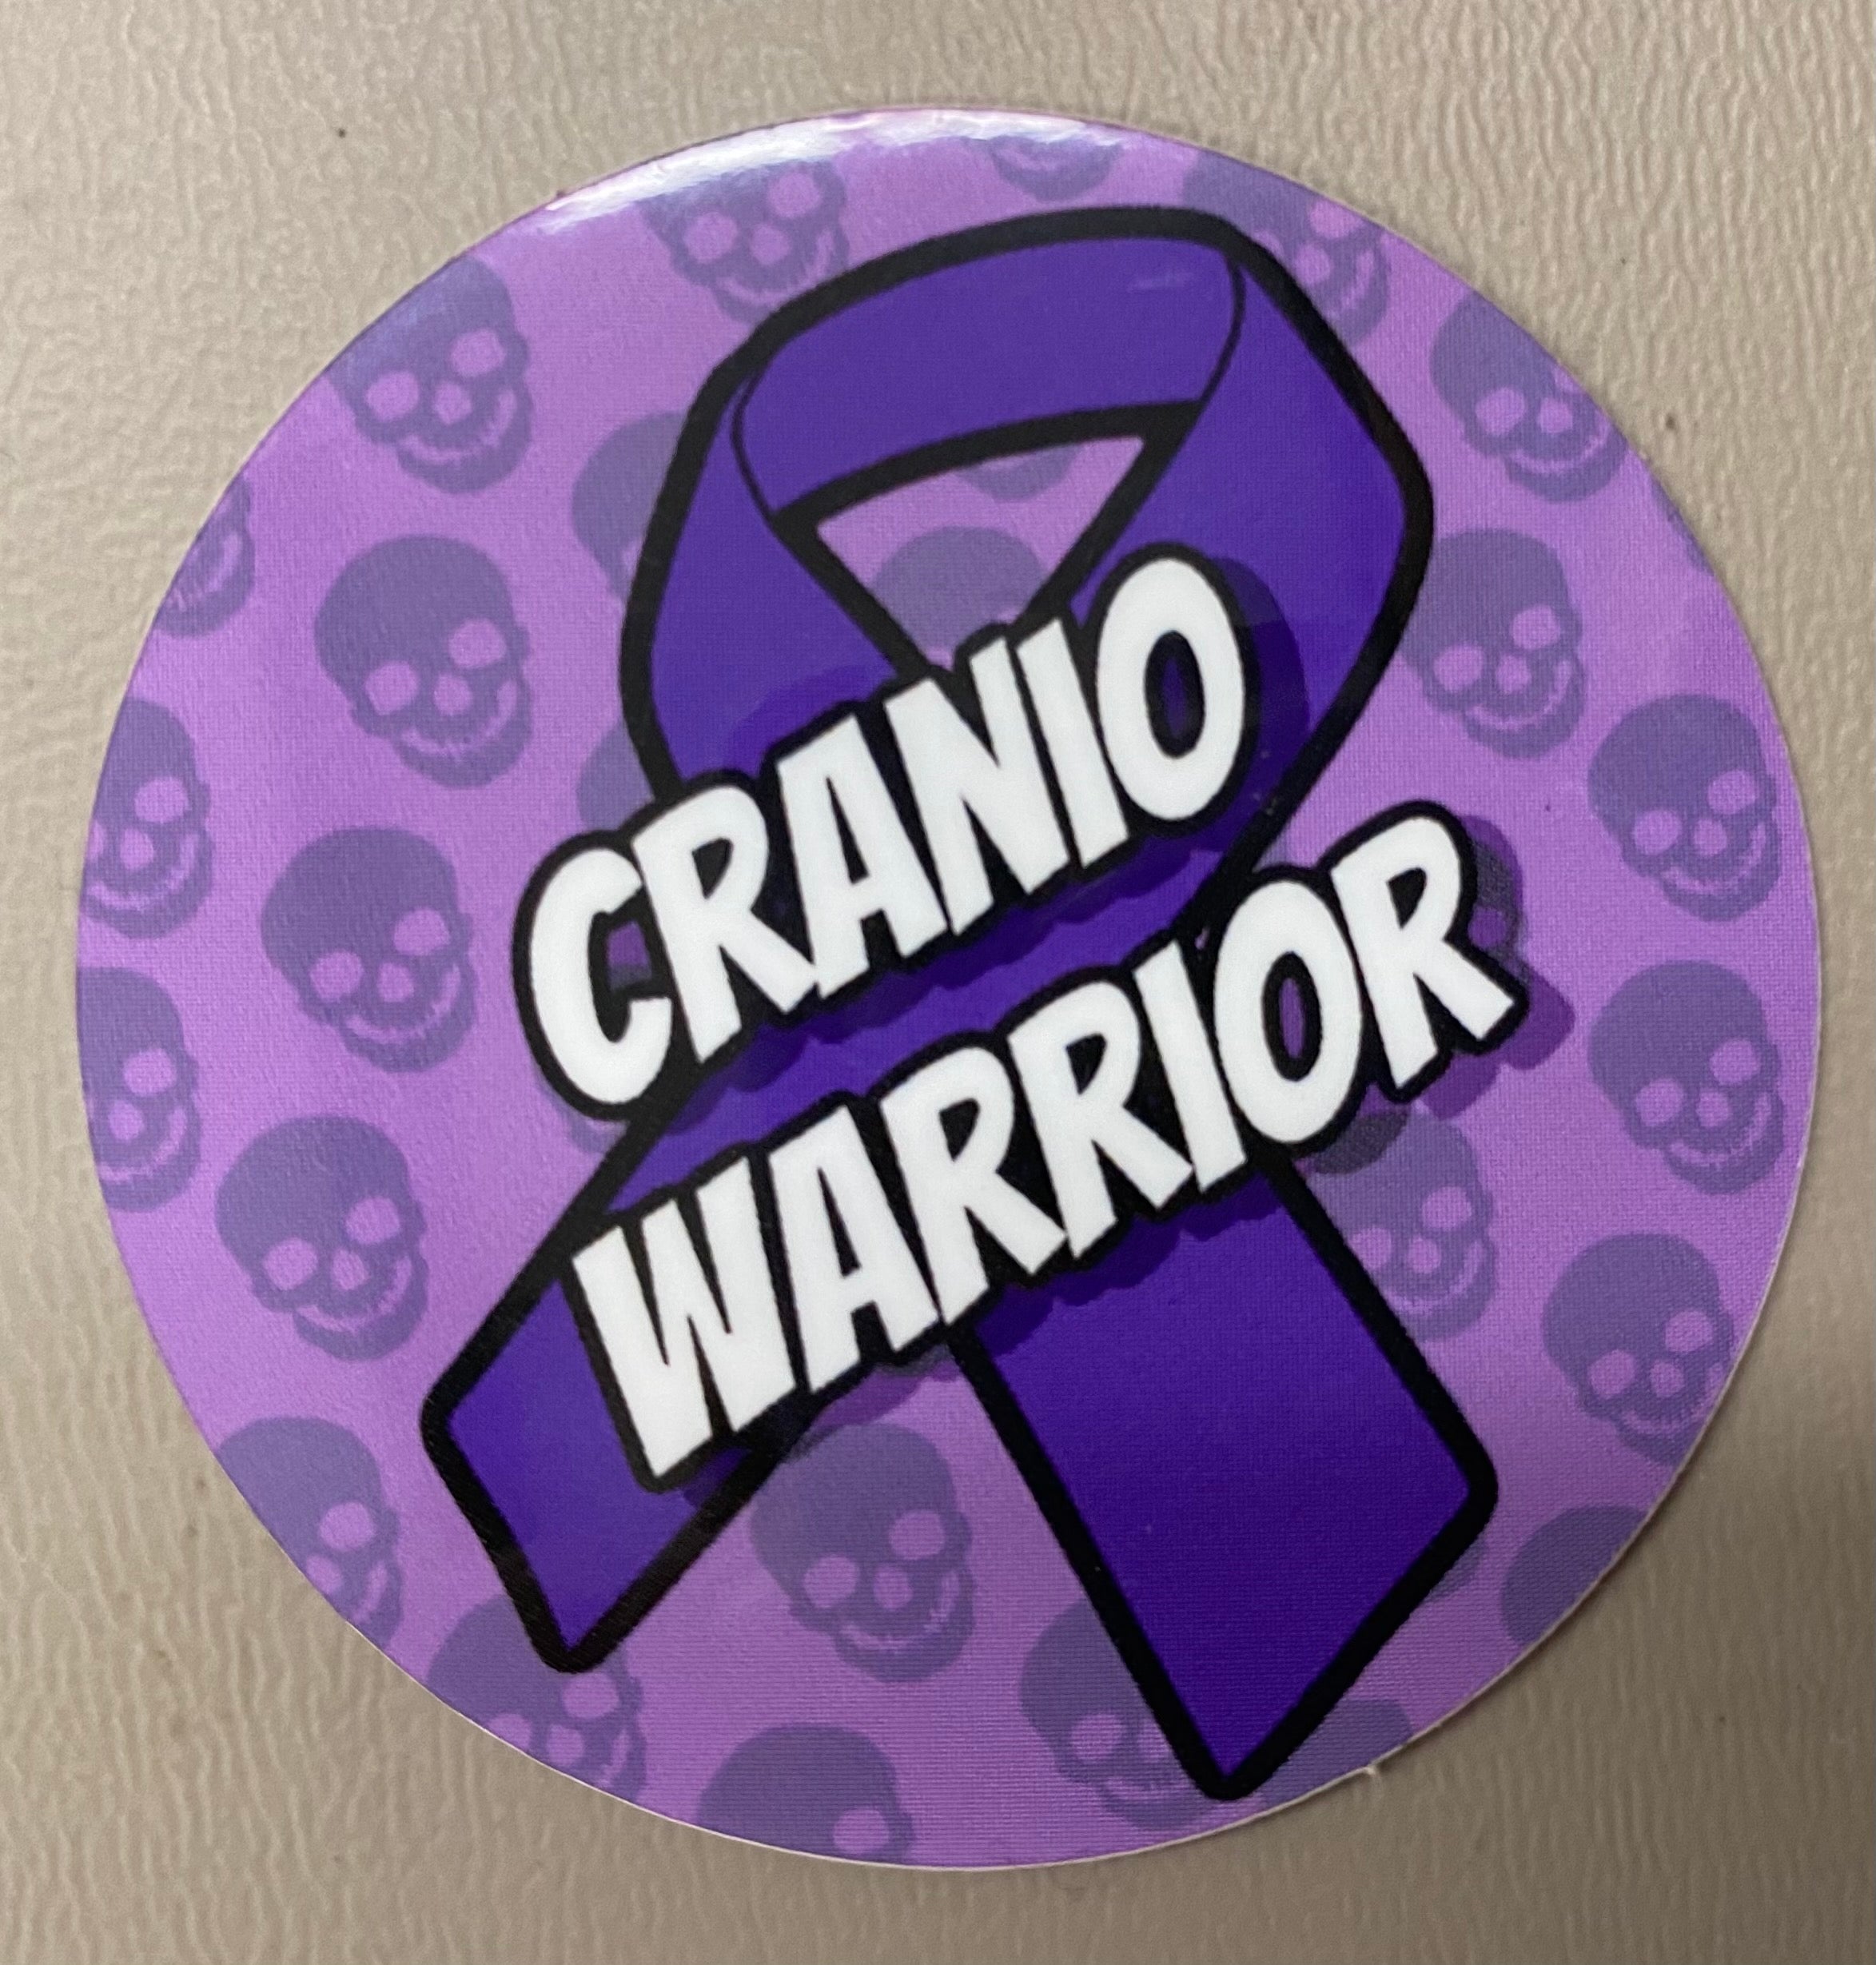 Cranio Warrior sticker